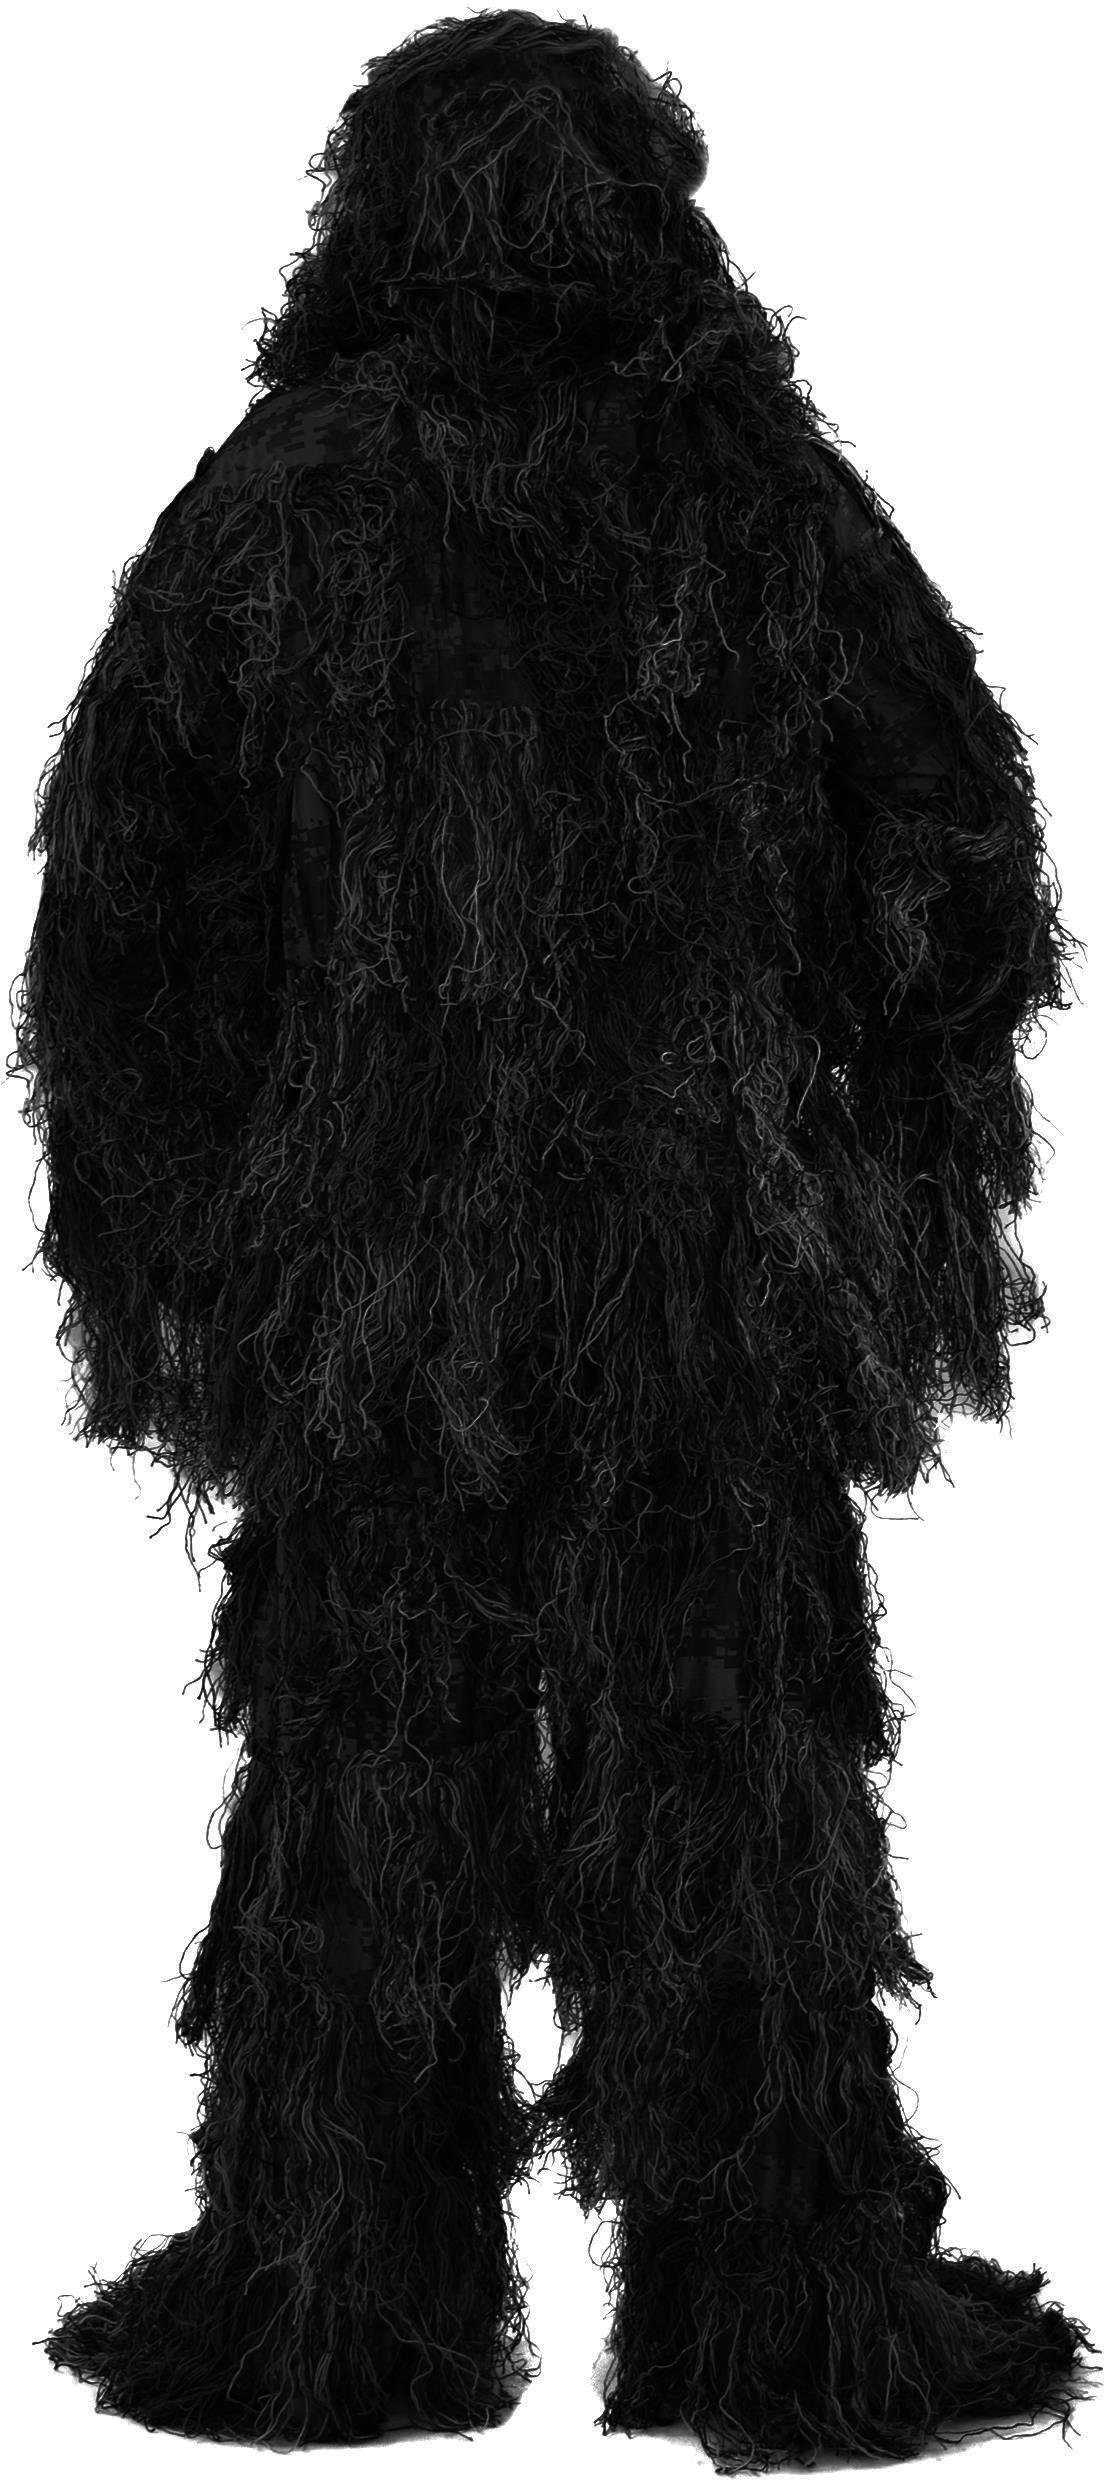 normani Monster-Kostüm Tarnanzug 4-teilig Ghillie Suit,  Scharfschützen-Tarnung Paintball-Outfit bestehend aus Jacke, Hose, Gewehr-  und Kopfbedeckung inkl Tragetasche